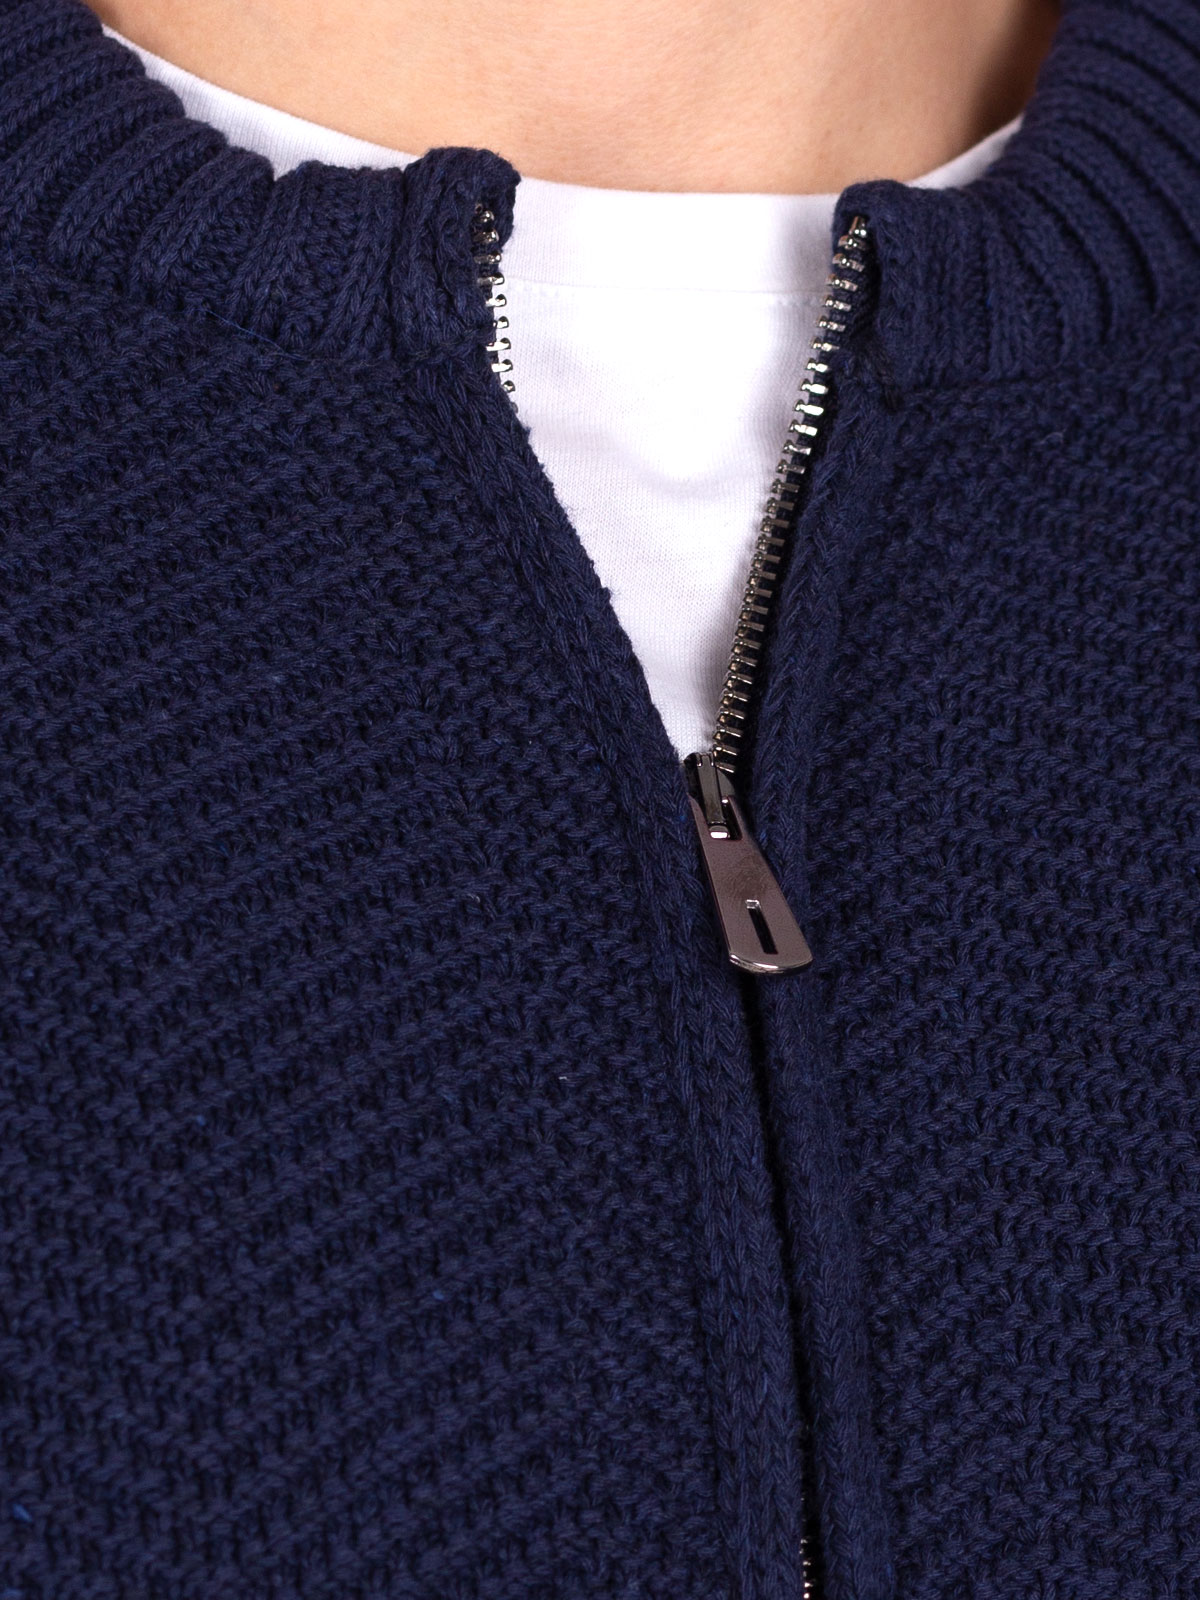 Cardigan cu un tricot mare în albastru î - 28110 € 61.30 img3